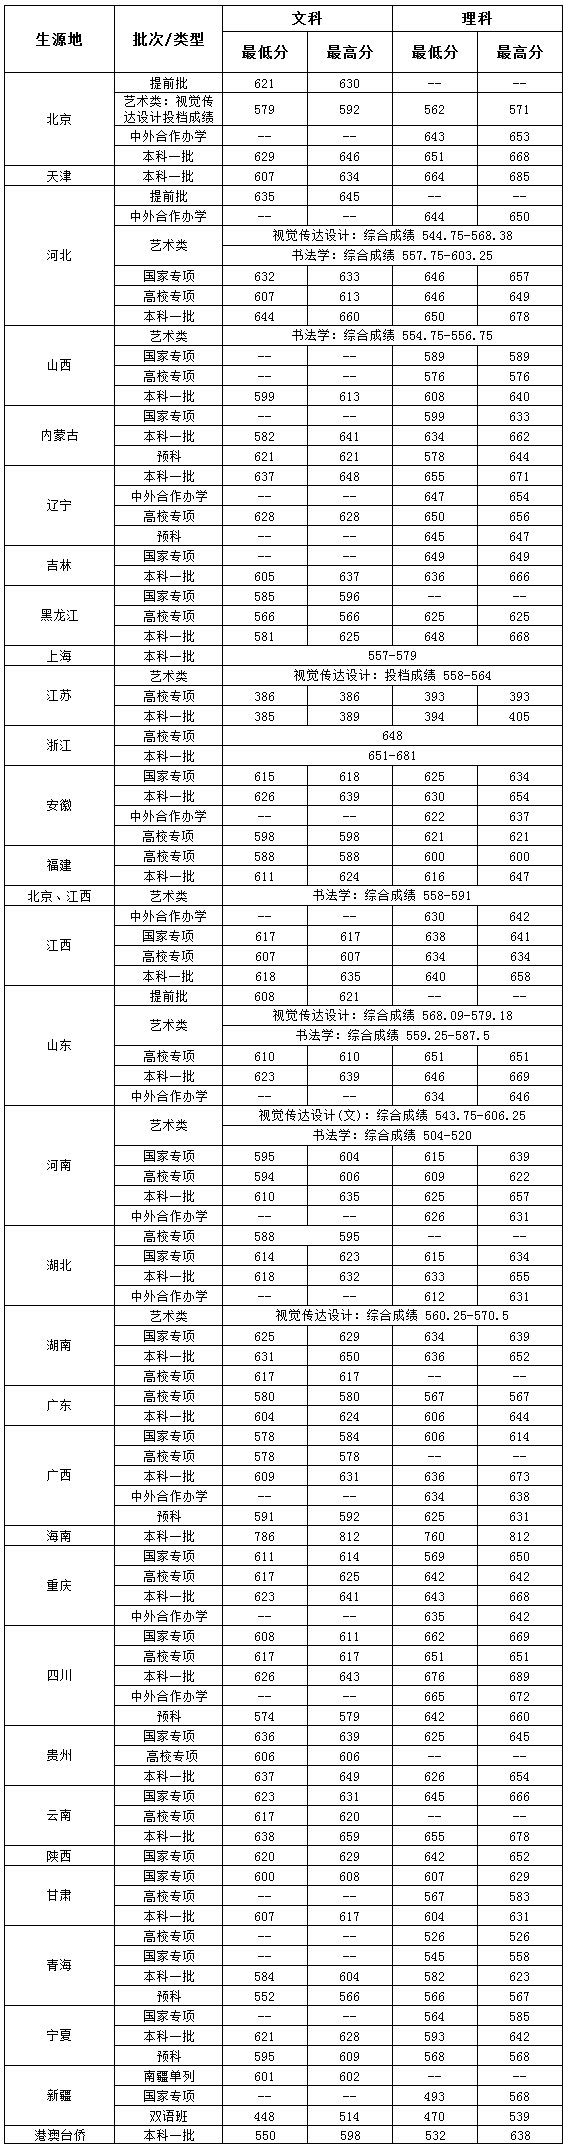 中央财经大学2019年本科录取分数统计表